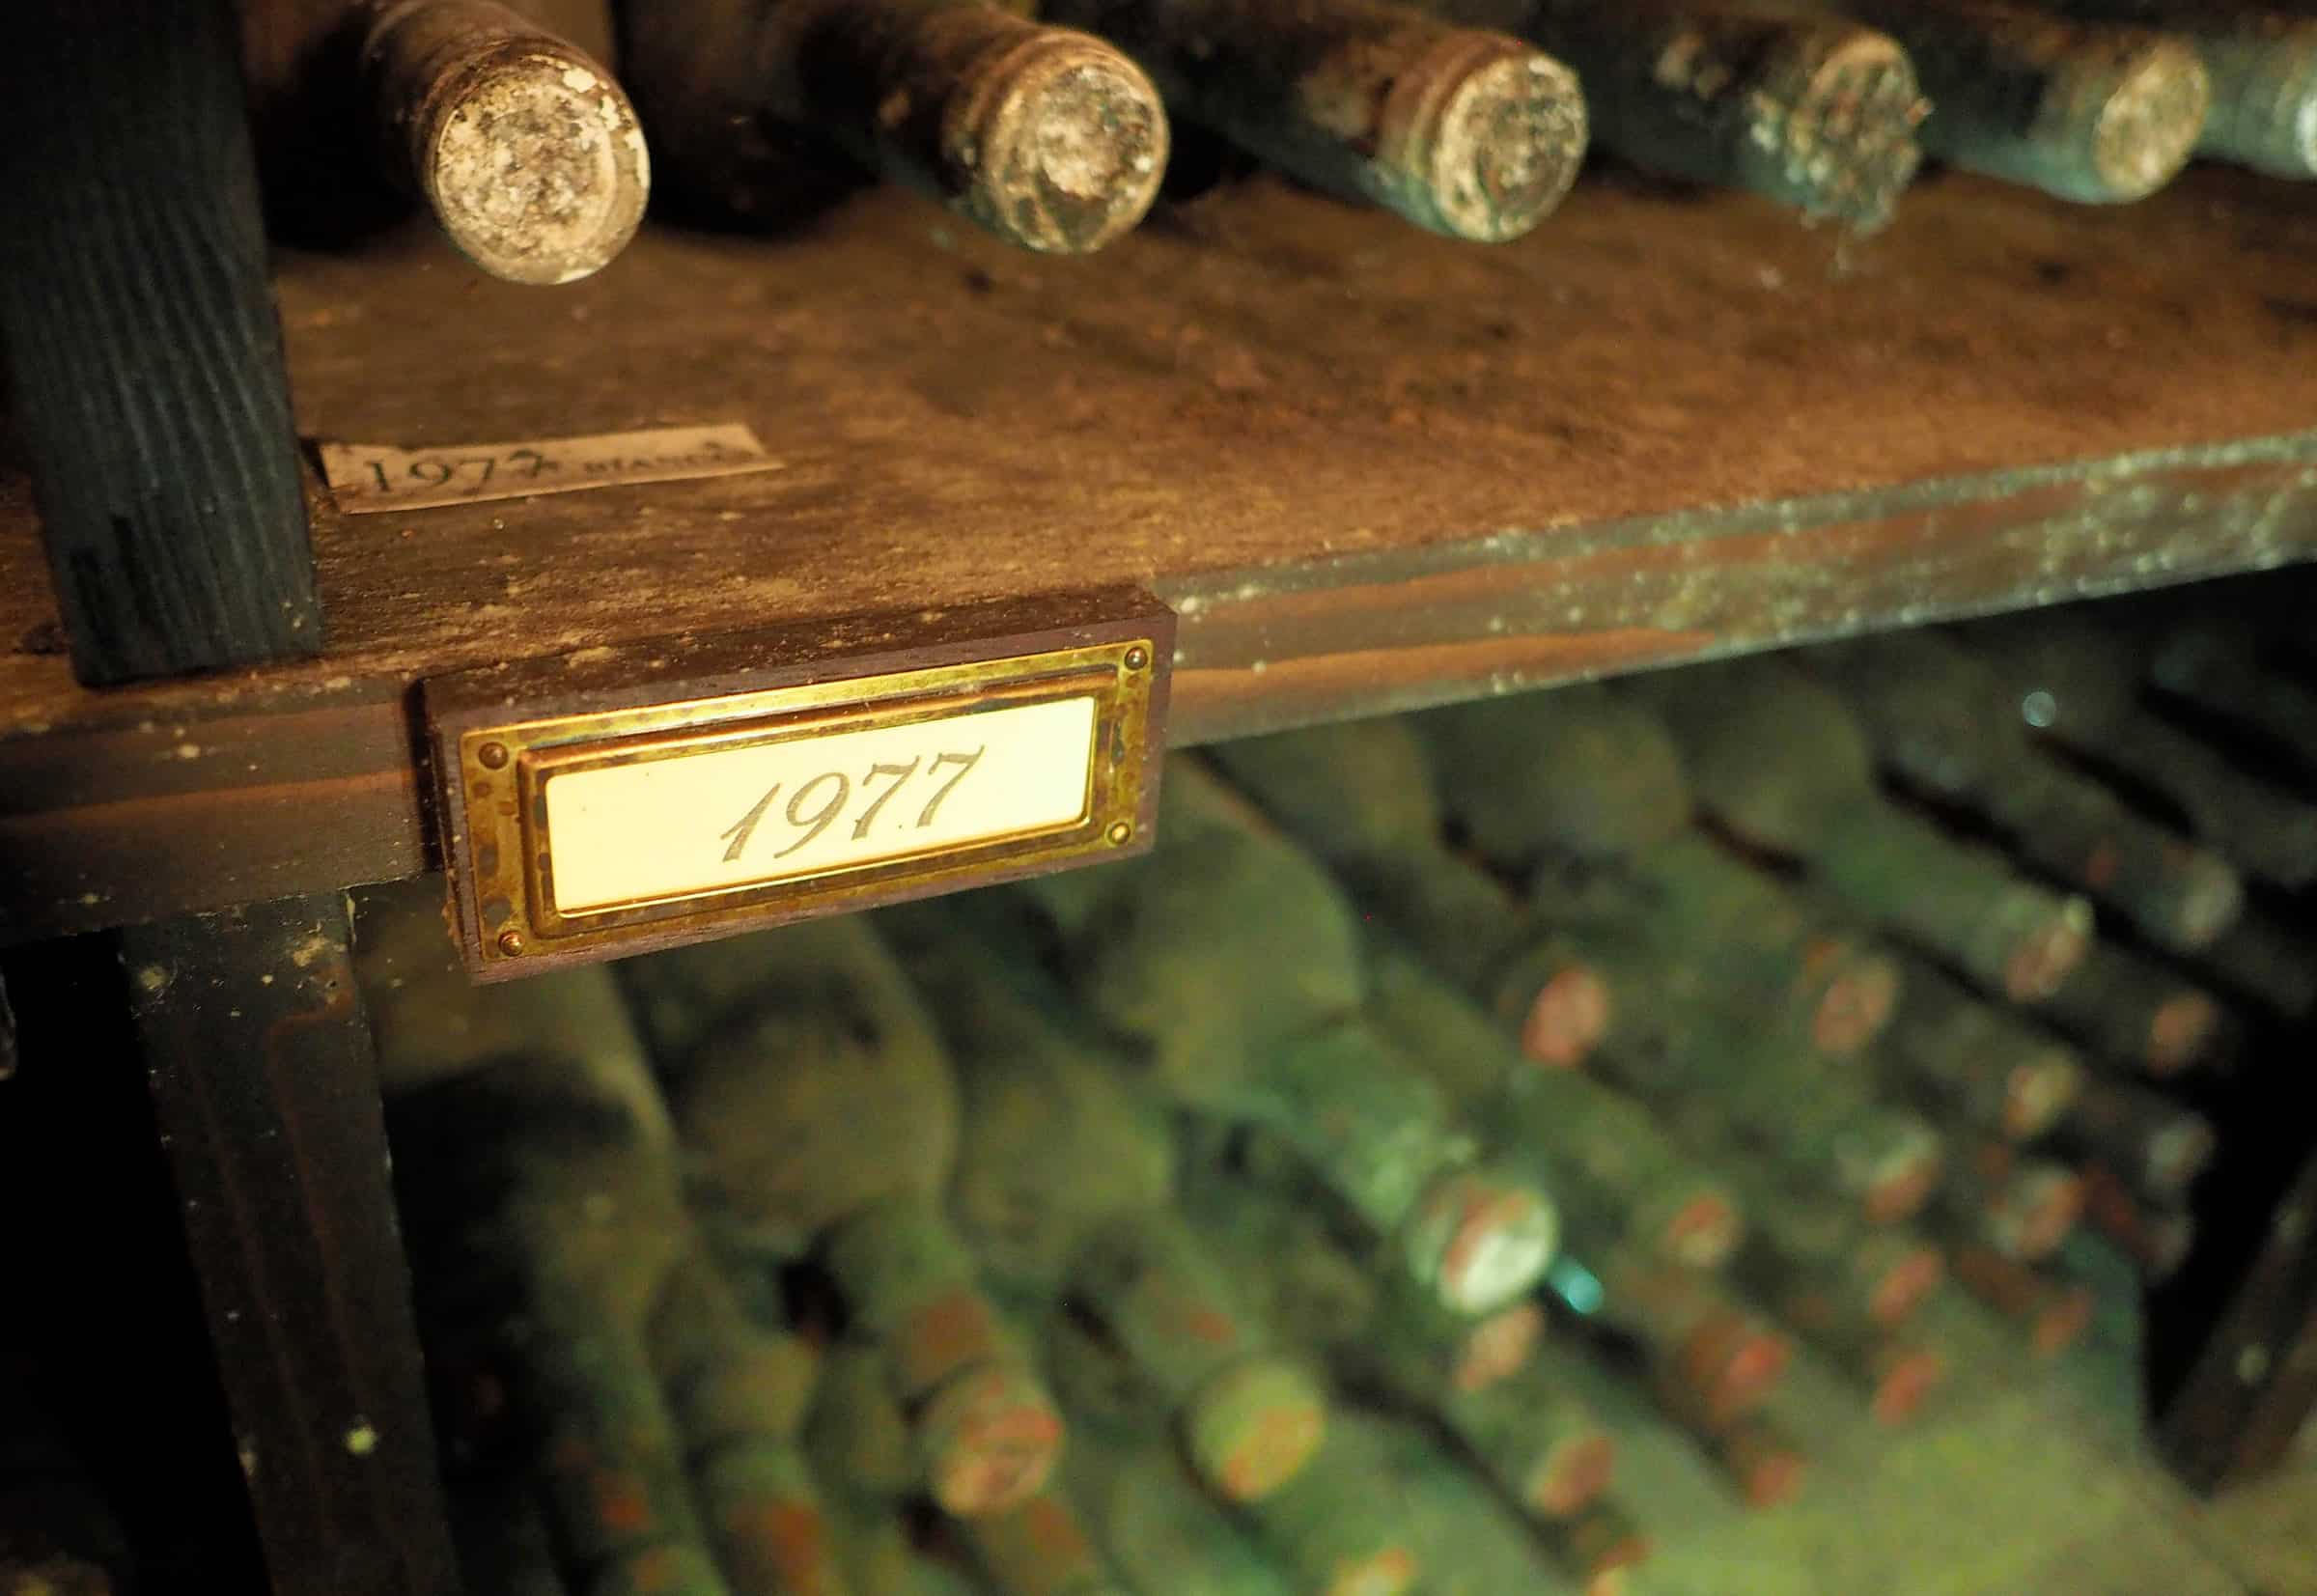 Wijnrondleiding en wijnproeverij bij Castello d'Albola